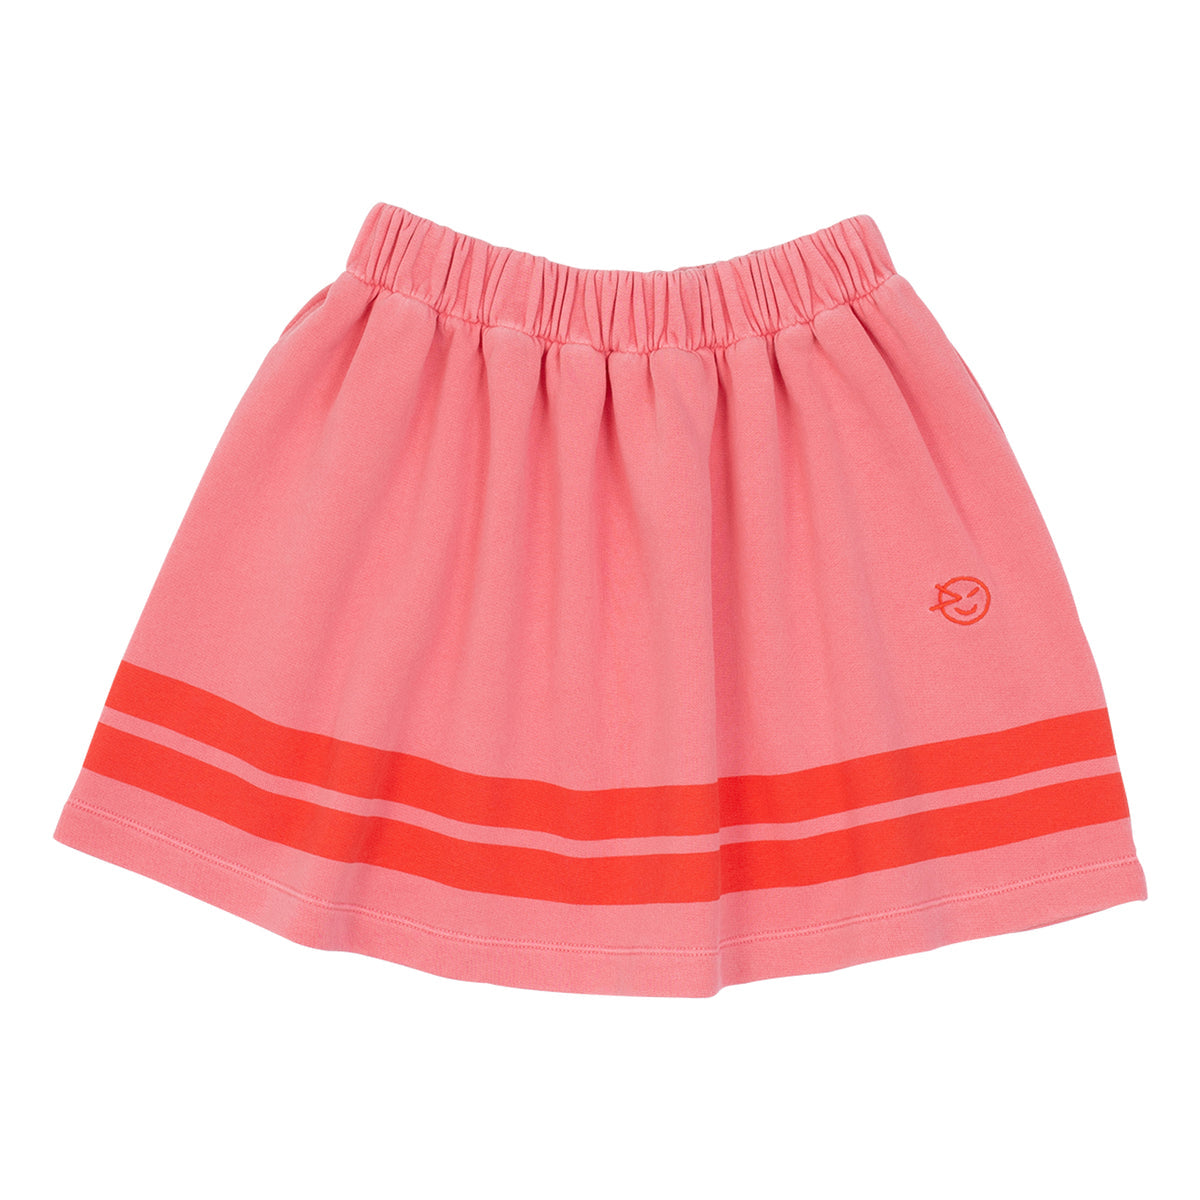 Vela Wynken Skirt